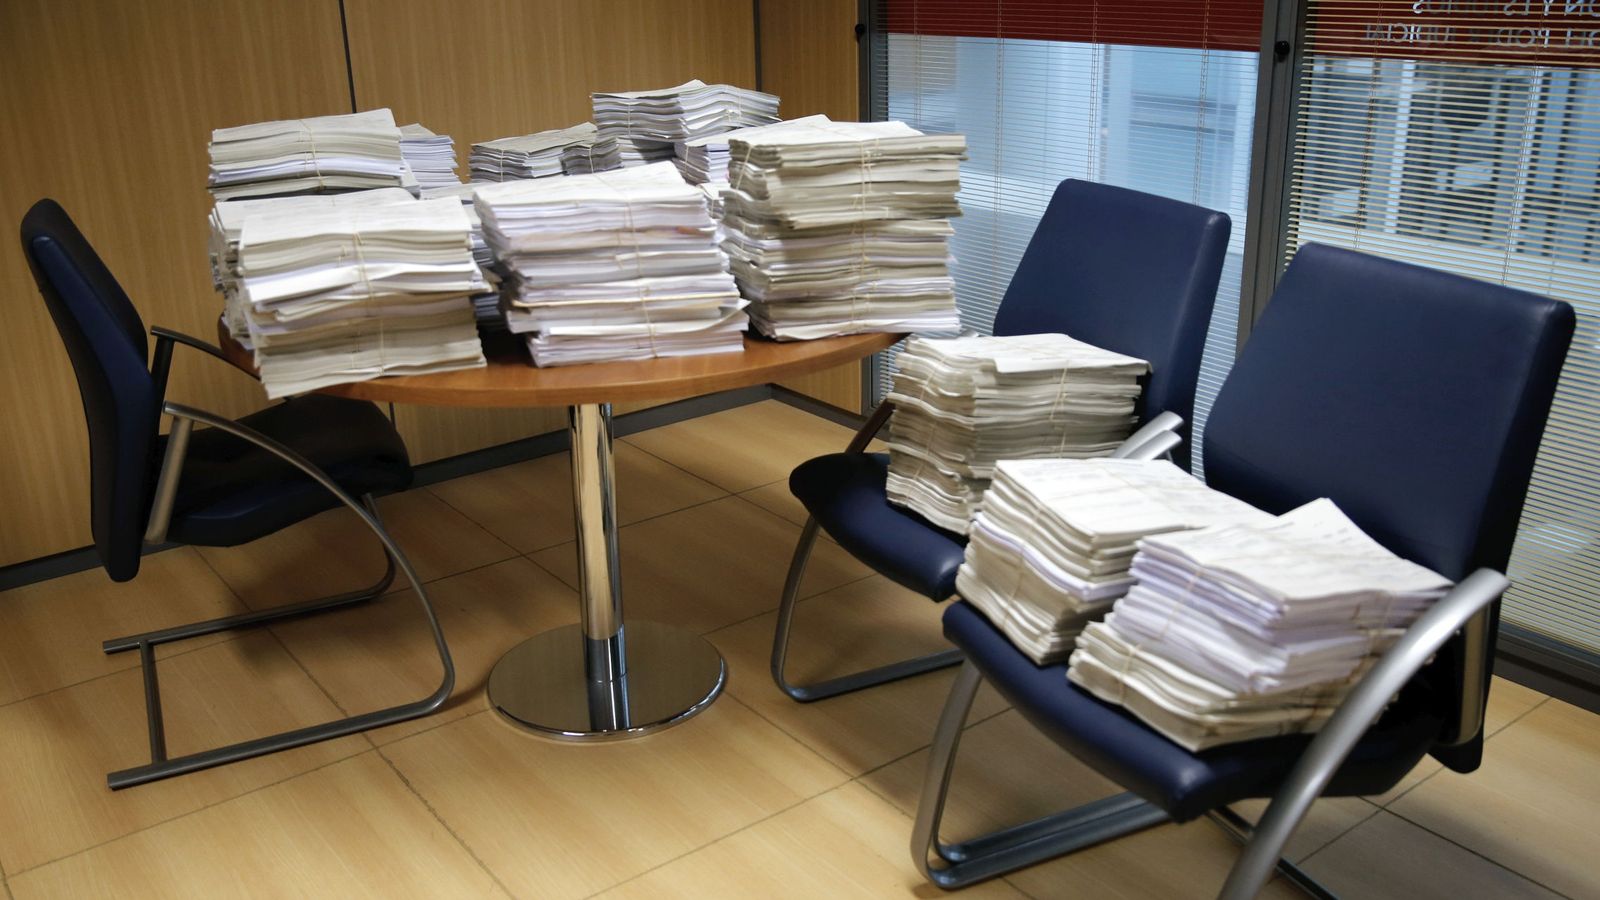 Foto: Juzgados especializados en cláusulas suelo reciben 3.500 demandas en 2 meses